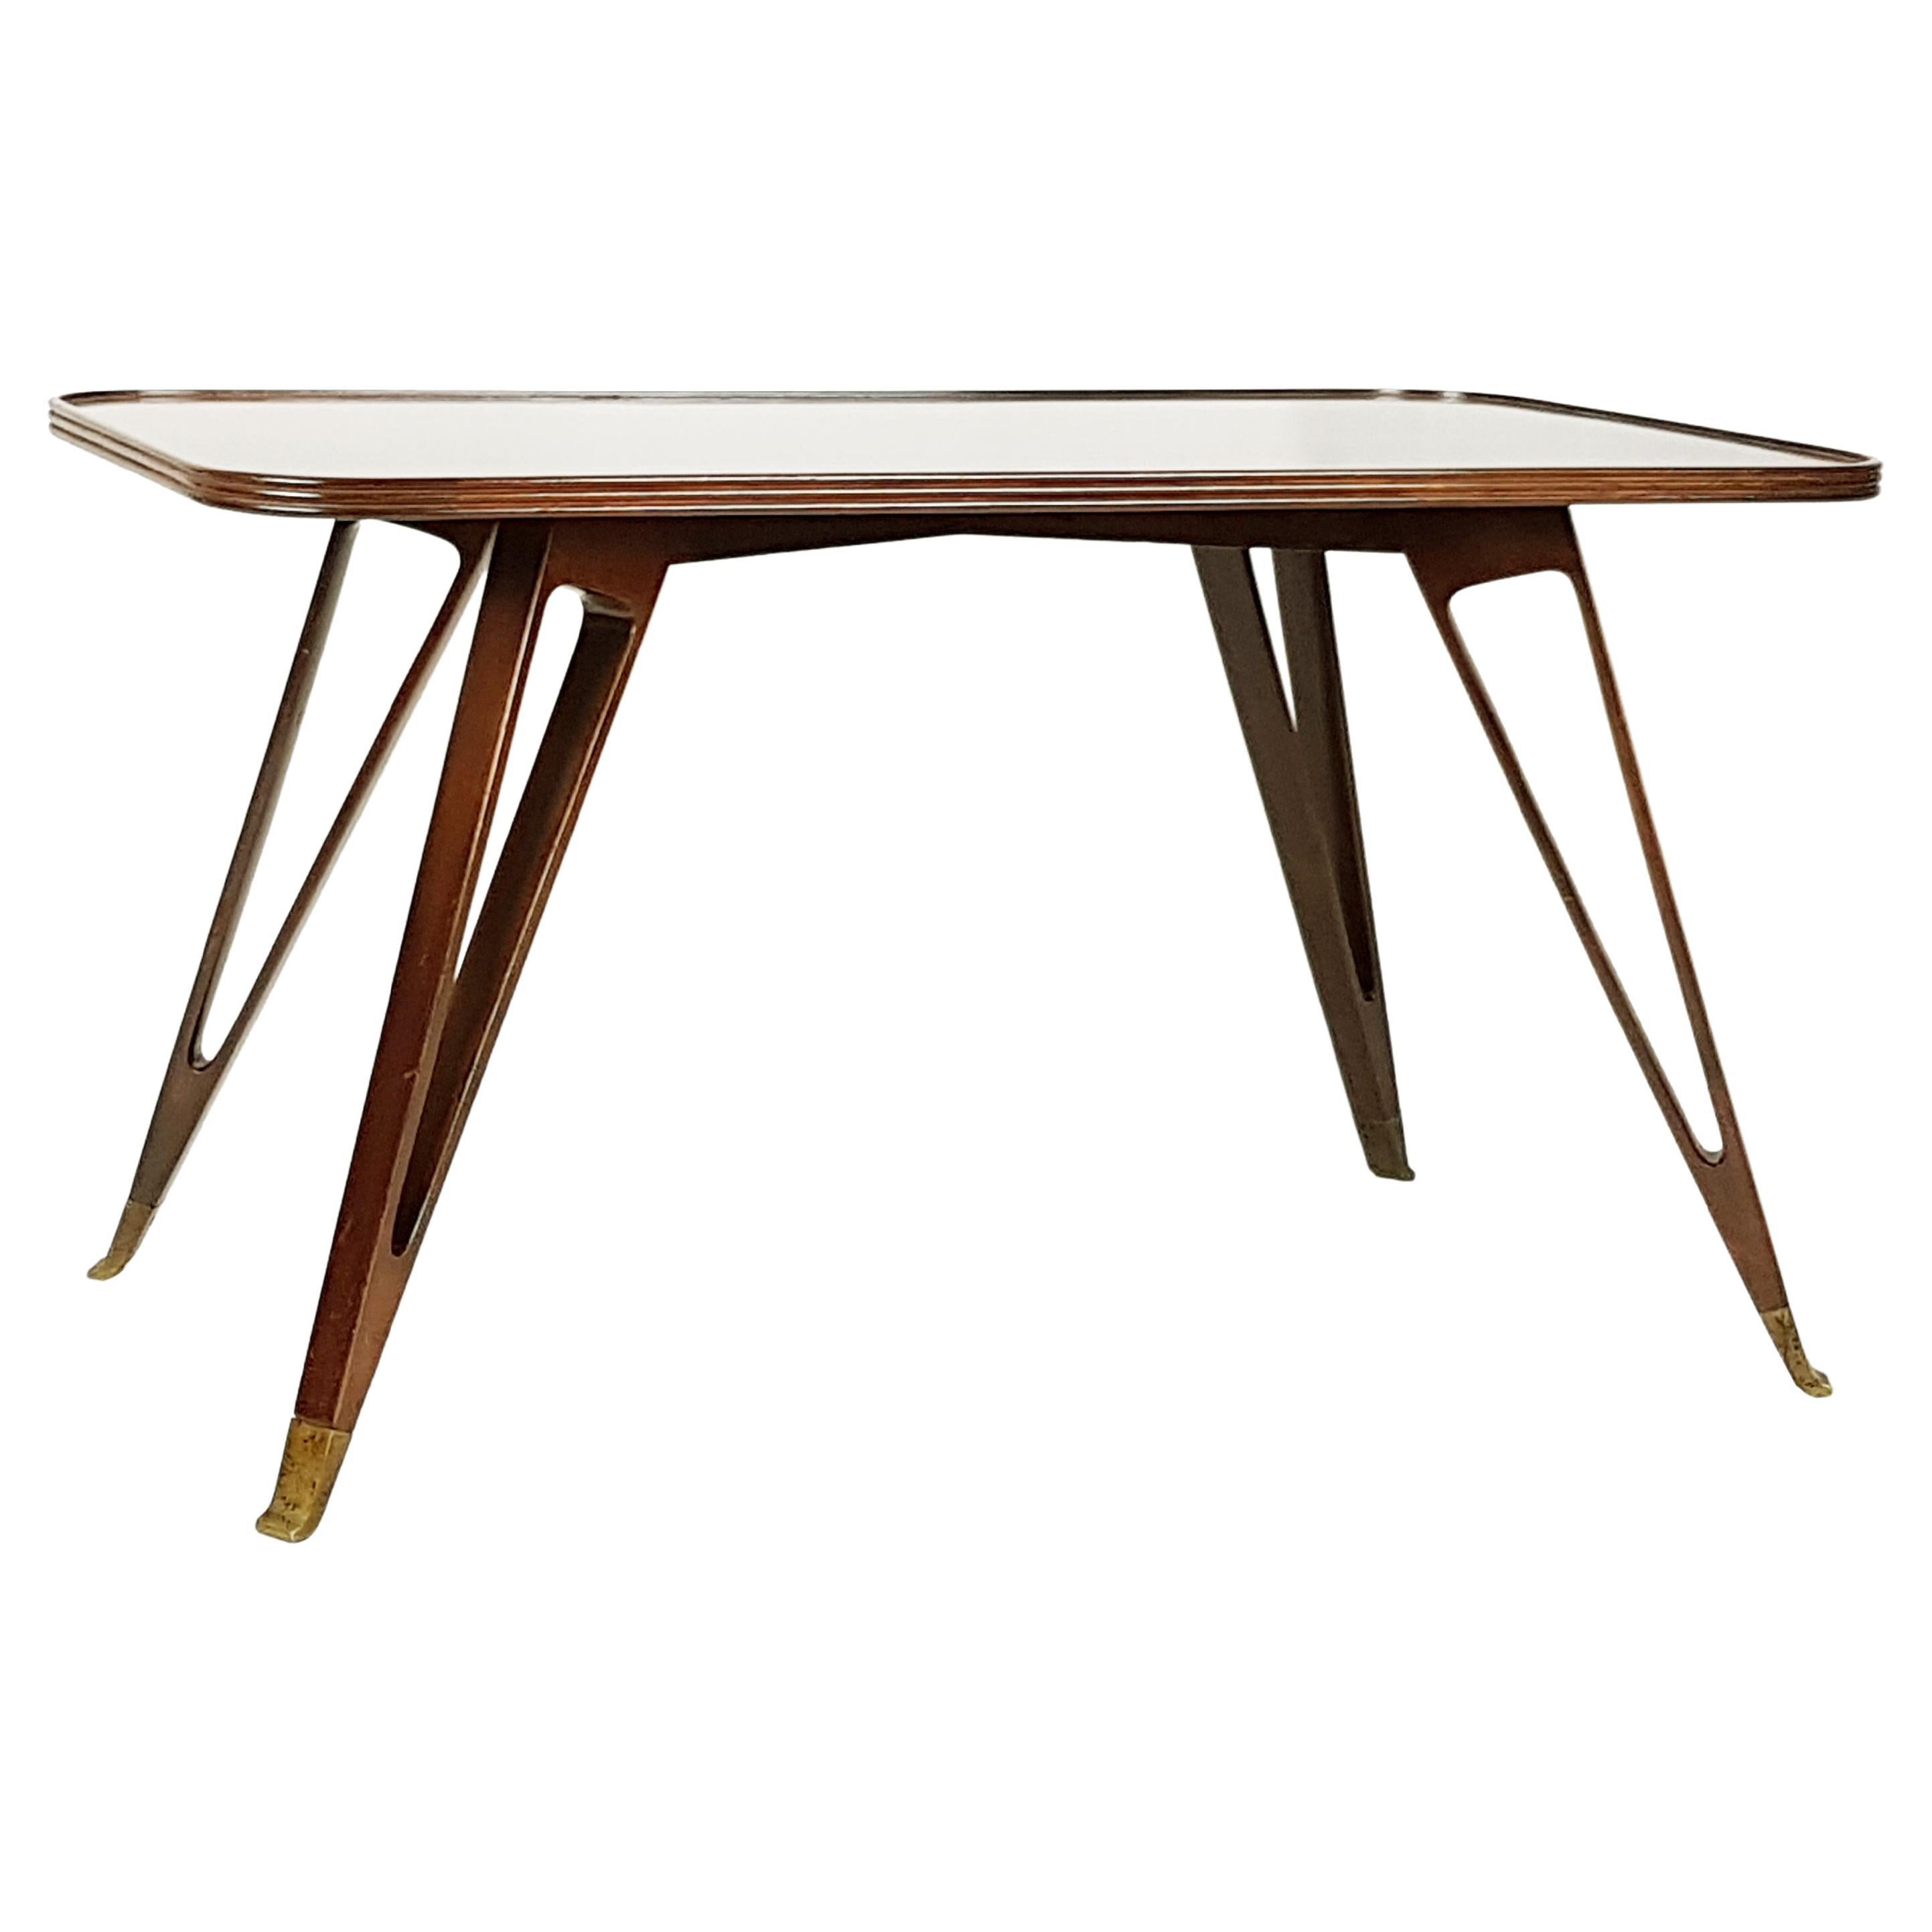 Table basse italienne en bois et laiton de style mi-siècle moderne attribuée à Paolo Buffa